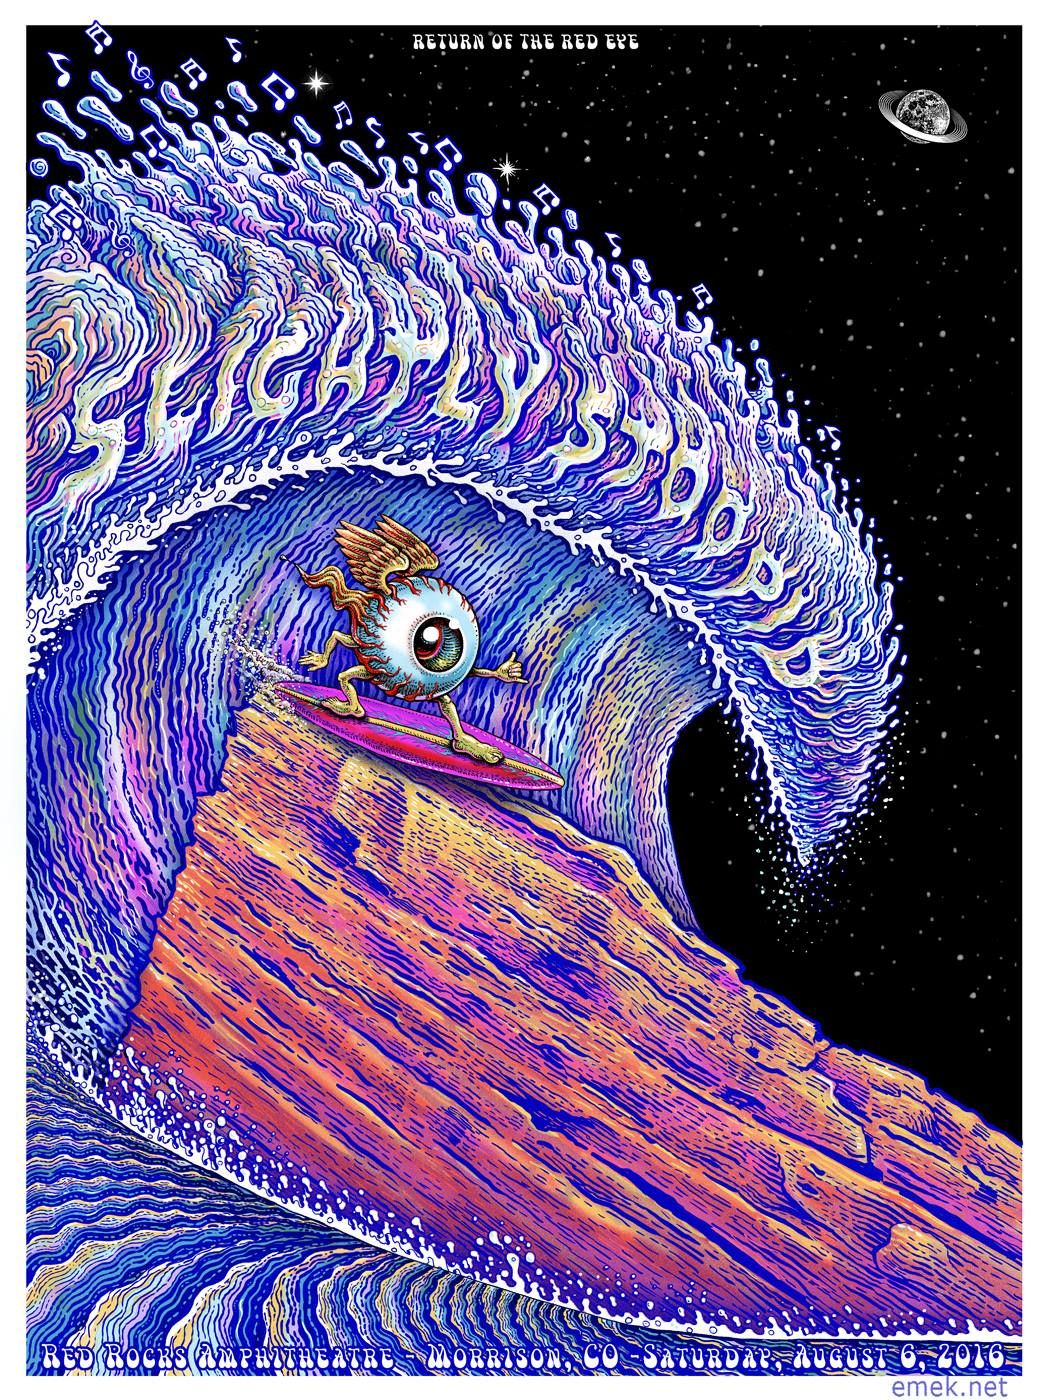 Emek Slightly Stoopid Red Rocks Poster Release. Rock posters, Psychedelic poster, Psychedelic art